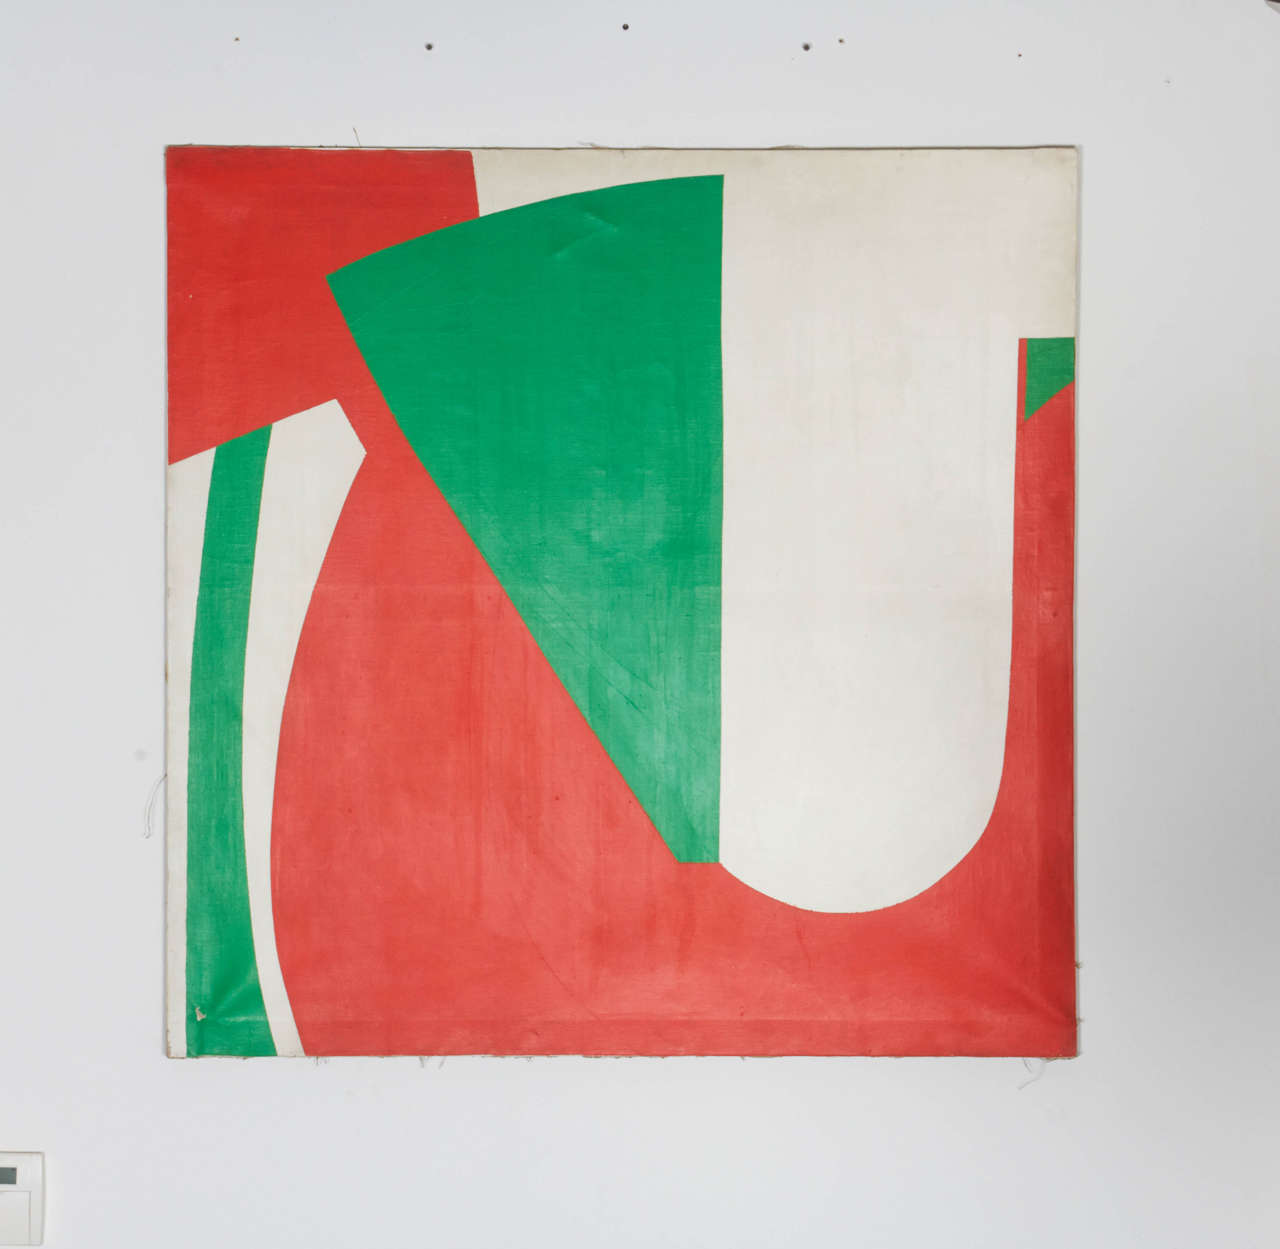 Gino Cosentino (1916-2005) est né à Catane et a travaillé et vécu à Milan le reste de sa vie. Il expose fréquemment, ce qui aboutit en 1975 à une exposition à la Rotonda della Besana, organisée par la municipalité de Milan, qui lui vaut des éloges